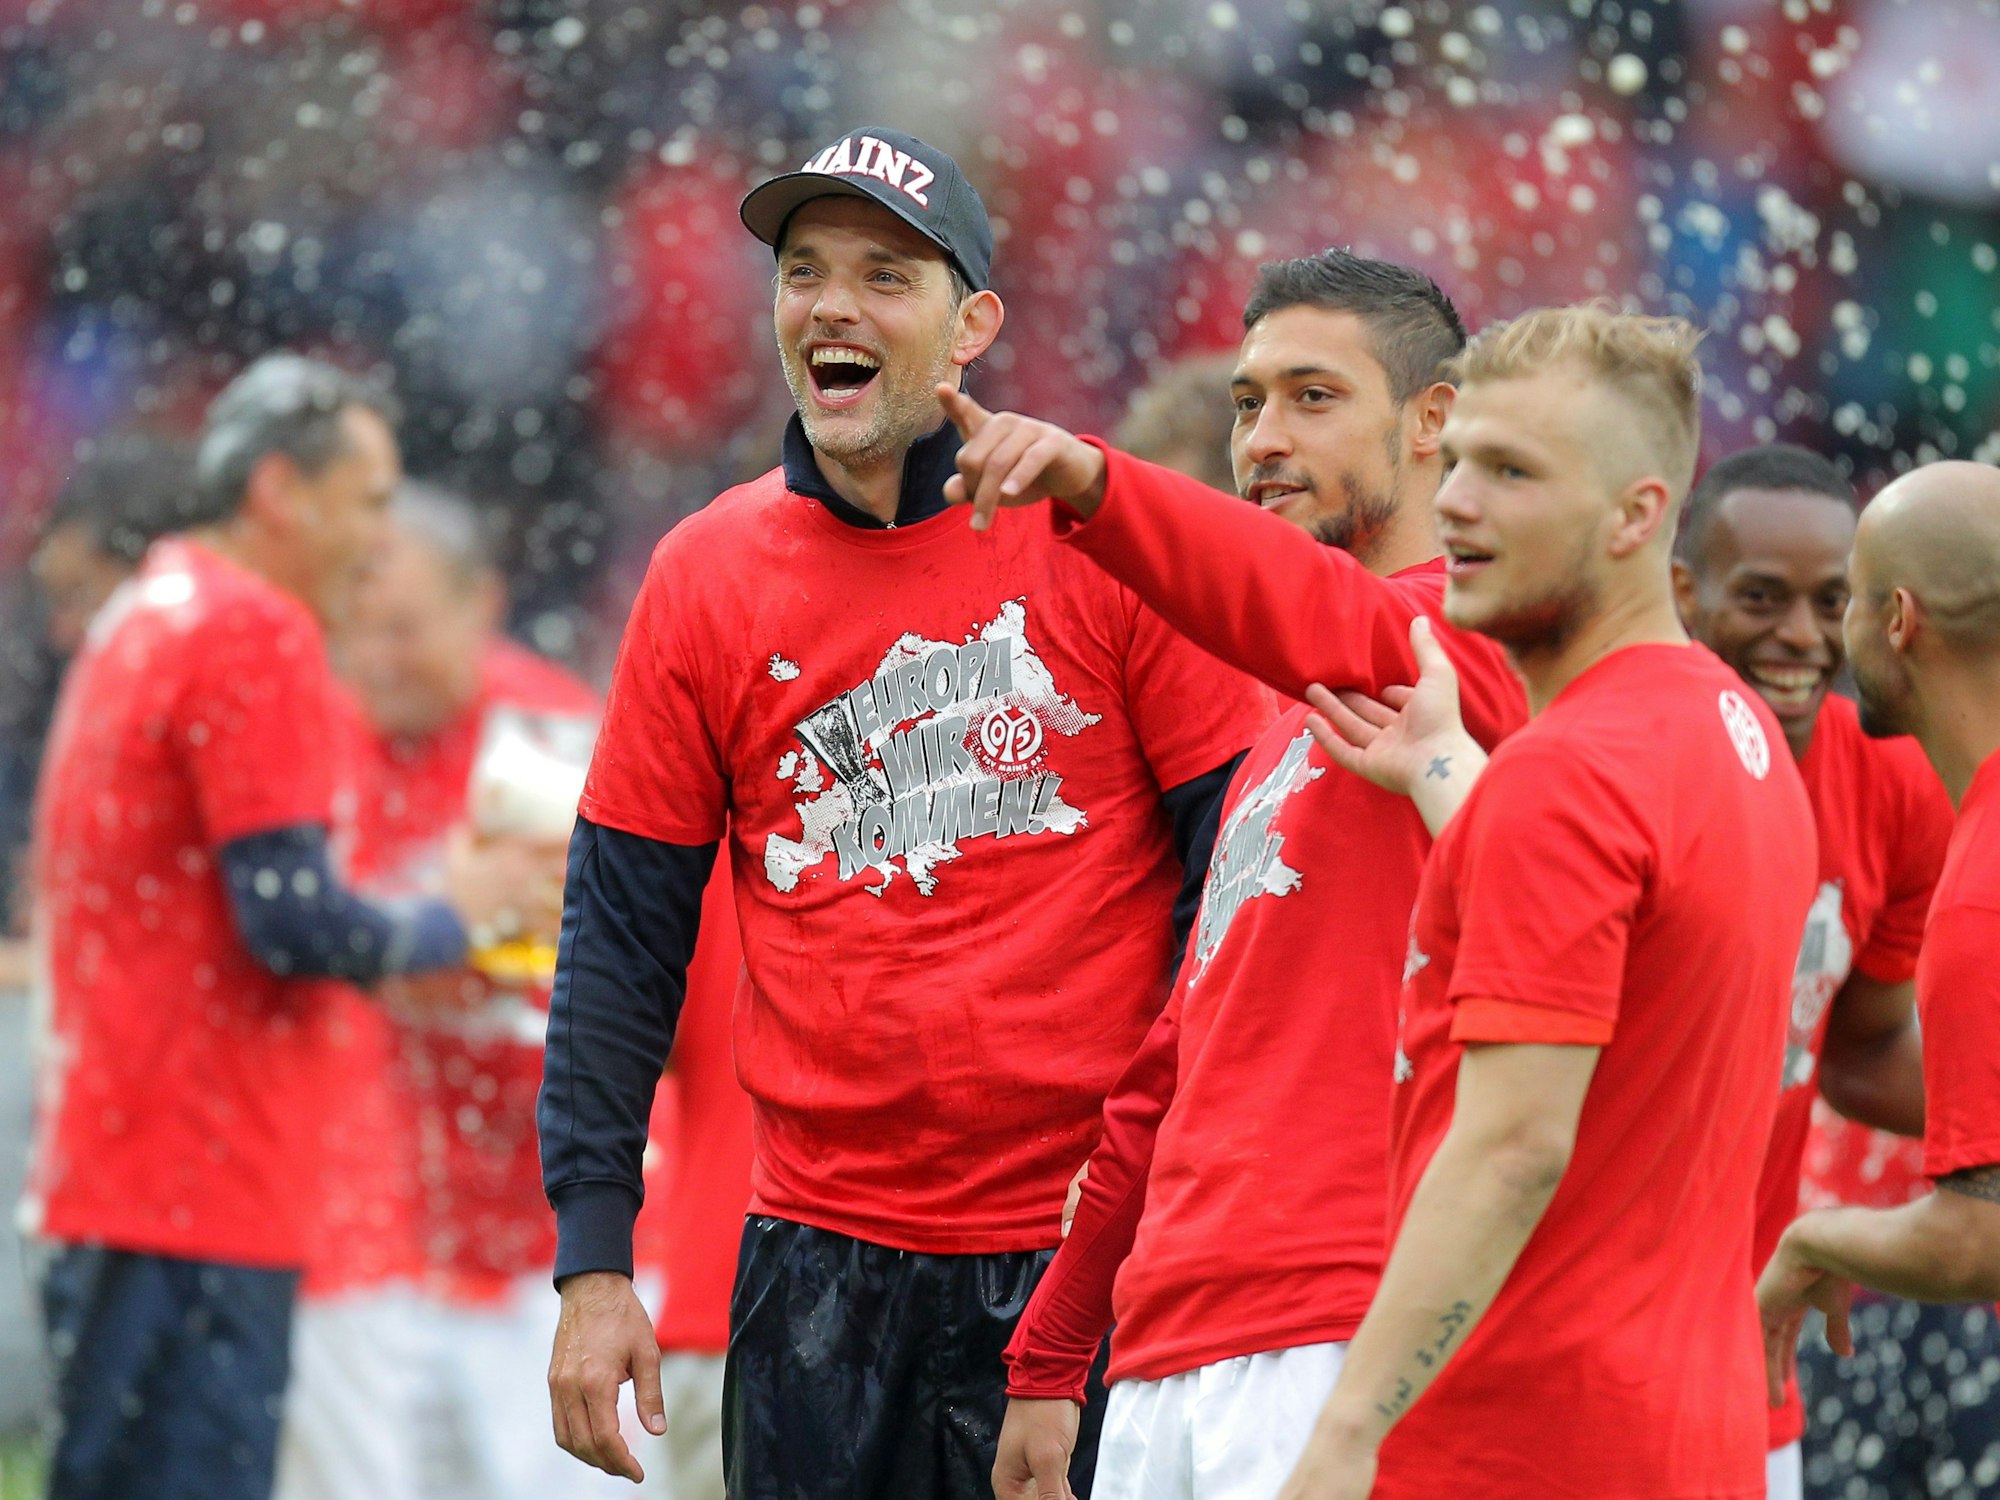 Der Mainzer Trainer Thomas Tuchel feiert nach dem letzten Spiel der Saison mit seiner Mannschaft.